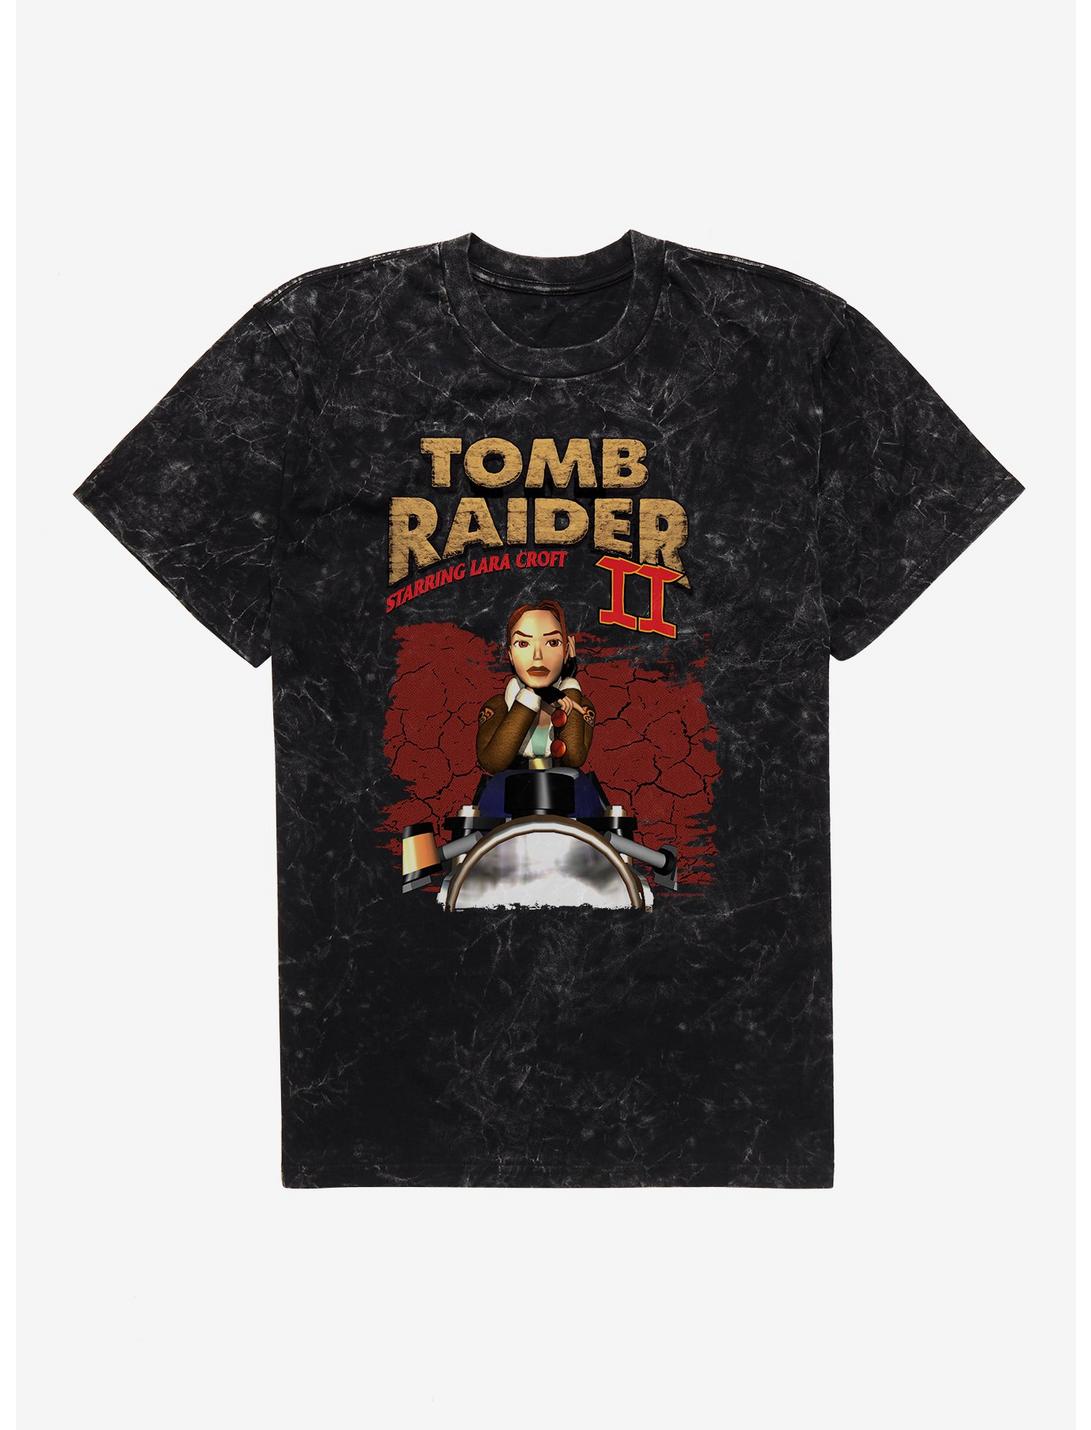 Tomb Raider II Starring Lara Croft Mineral Wash T-Shirt, BLACK MINERAL WASH, hi-res